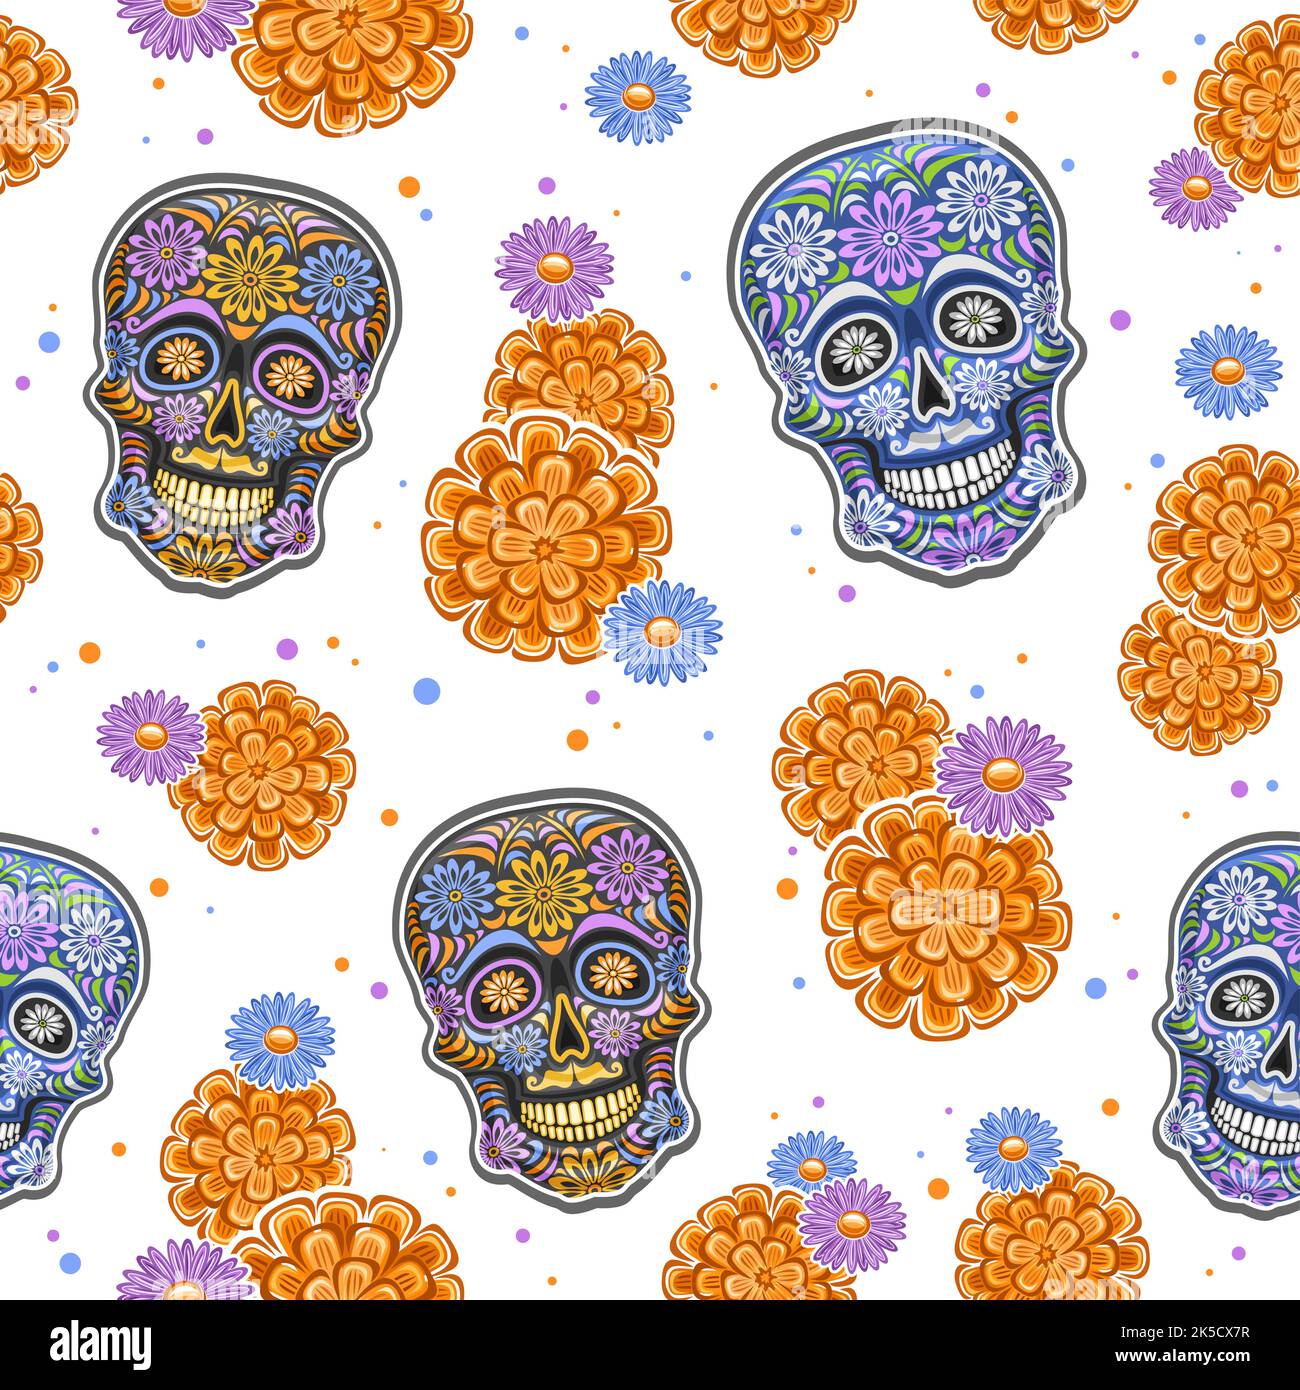 Vektor Day of the Dead nahtloses Muster, quadratische Wiederholung Hintergrund mit Satz von ausgeschnittenen Illustrationen der Vielfalt bunte Schädel und orange Blumen o Stock Vektor